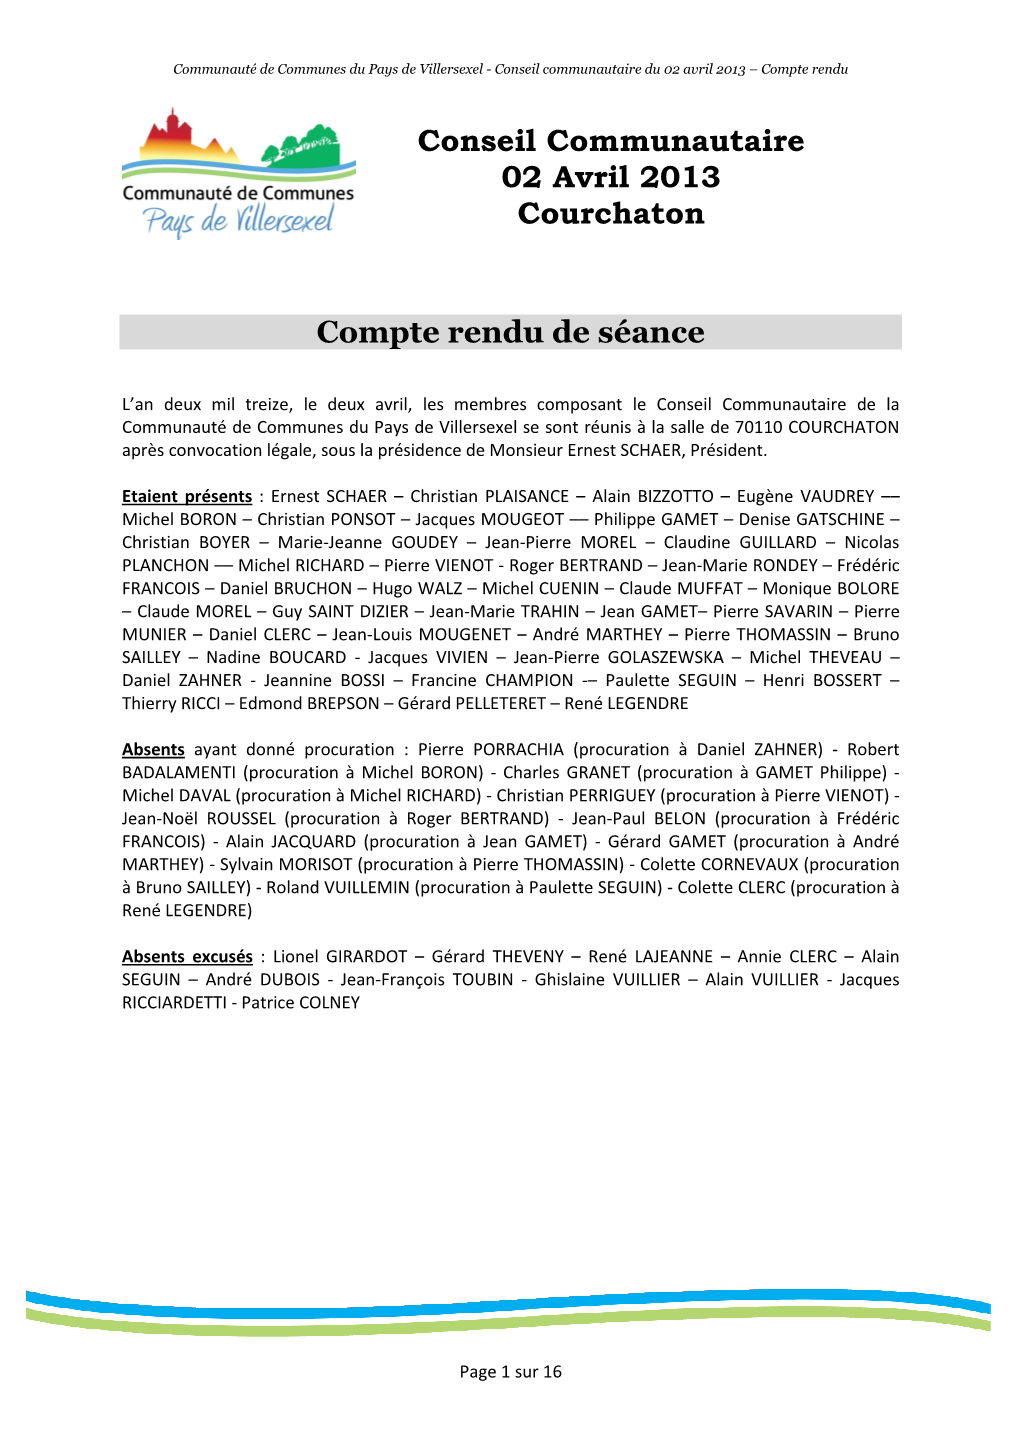 Conseil Communautaire 02 Avril 2013 Courchaton Compte Rendu De Séance